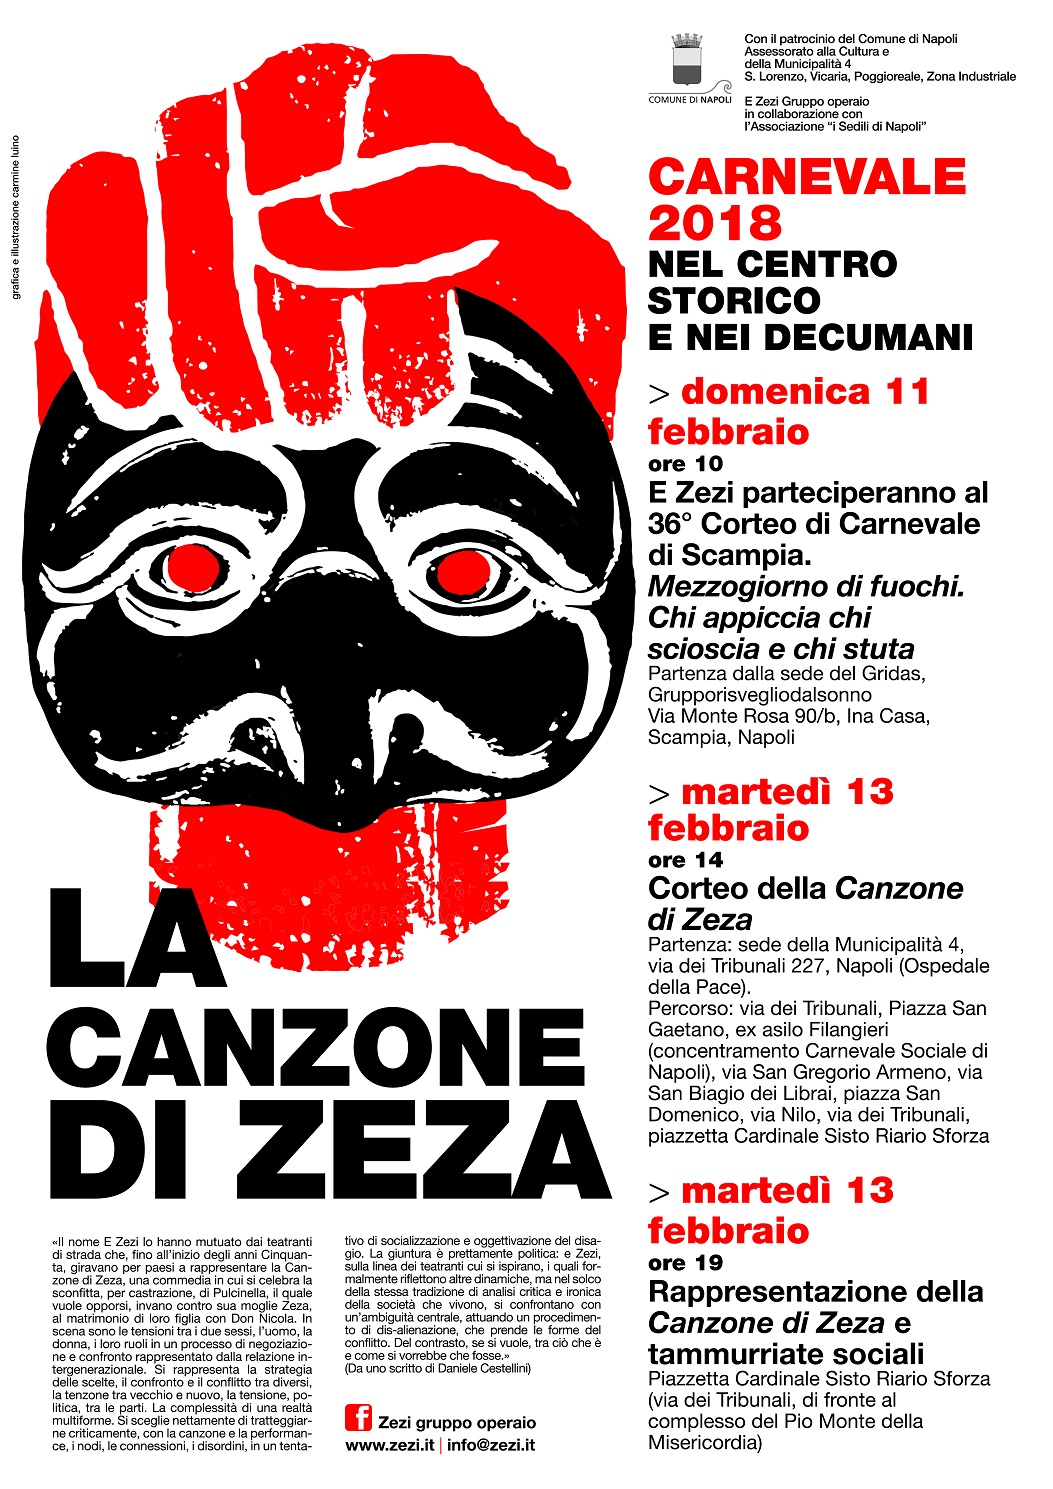 Napoli: Il Gruppo Operaio “E Zezi” partecipa al Carnevale 2018 con “La Canzone di Zeza”. (Scritto da Antonio Castaldo)